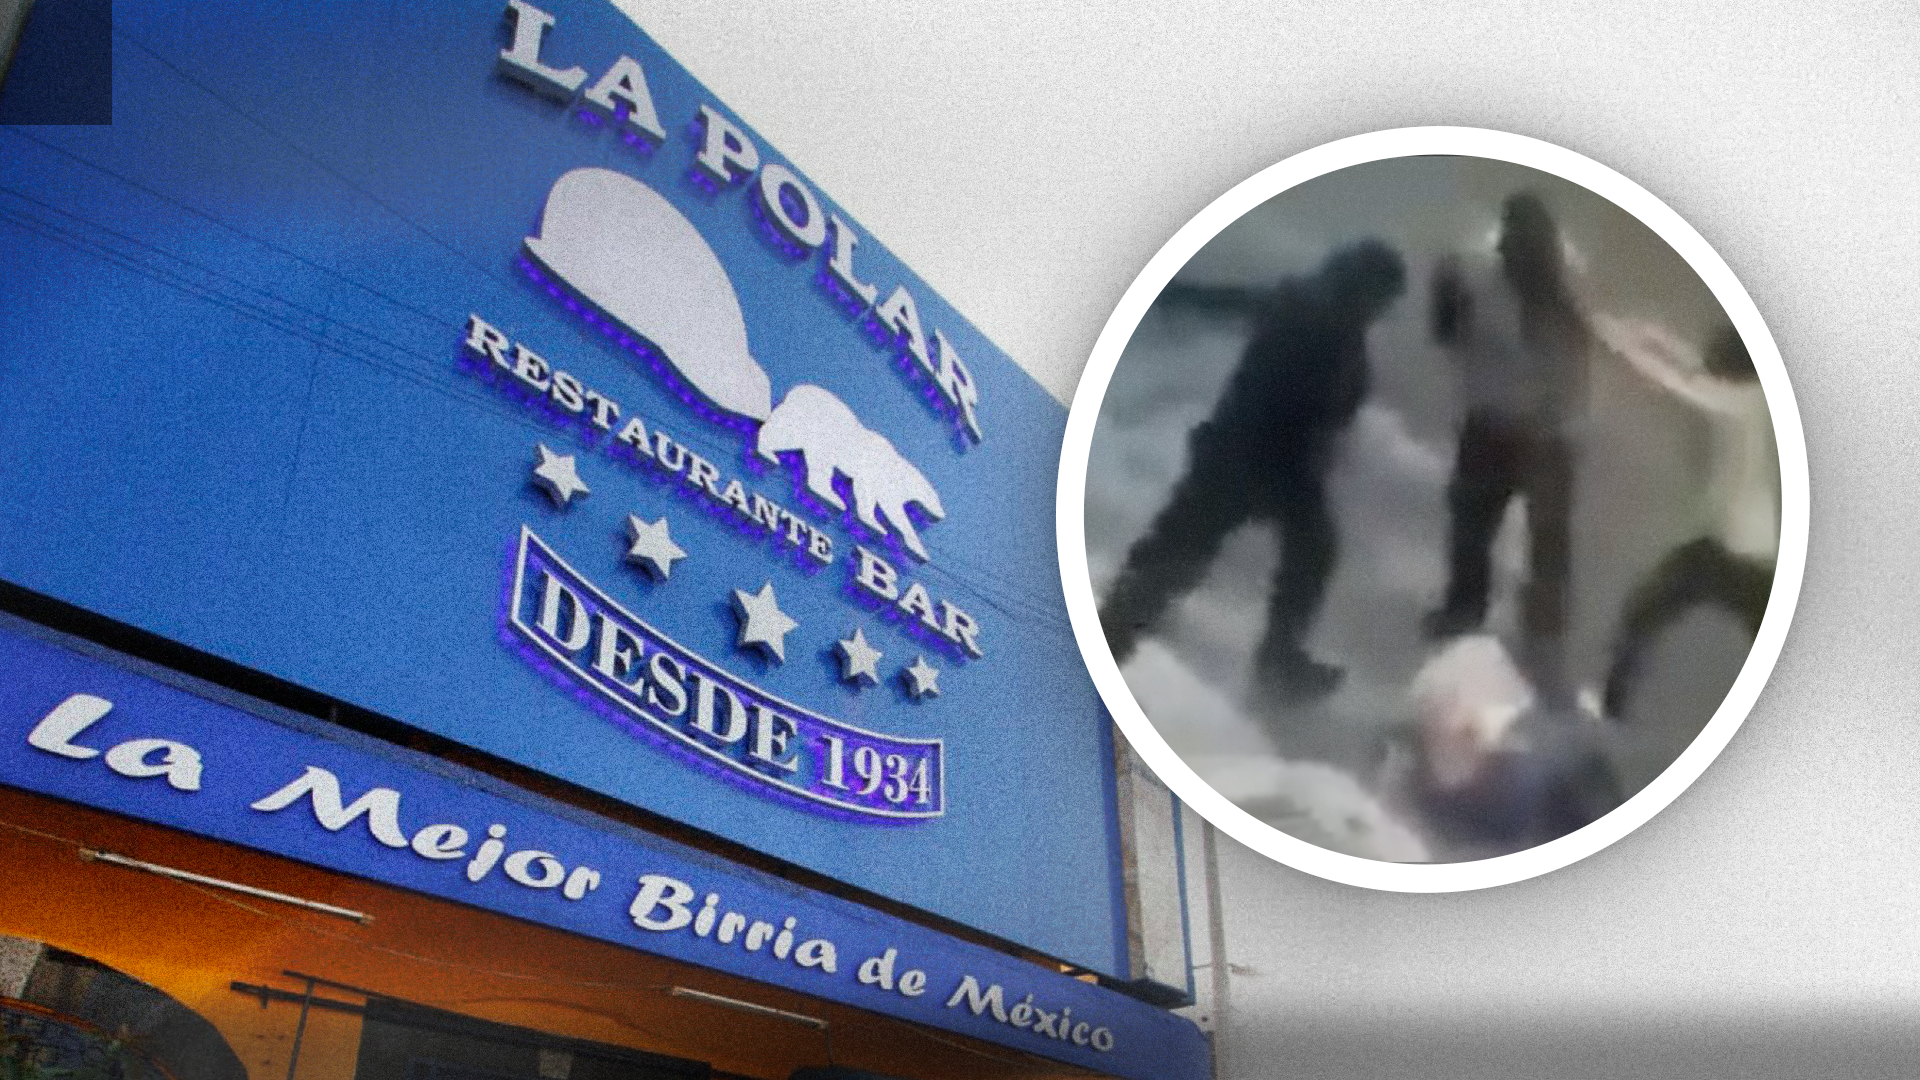 Qué pasó en La Polar? Meseros mataron a cliente: nuevo video muestra  discusión entre Antonio Monroy y Sergio Gama